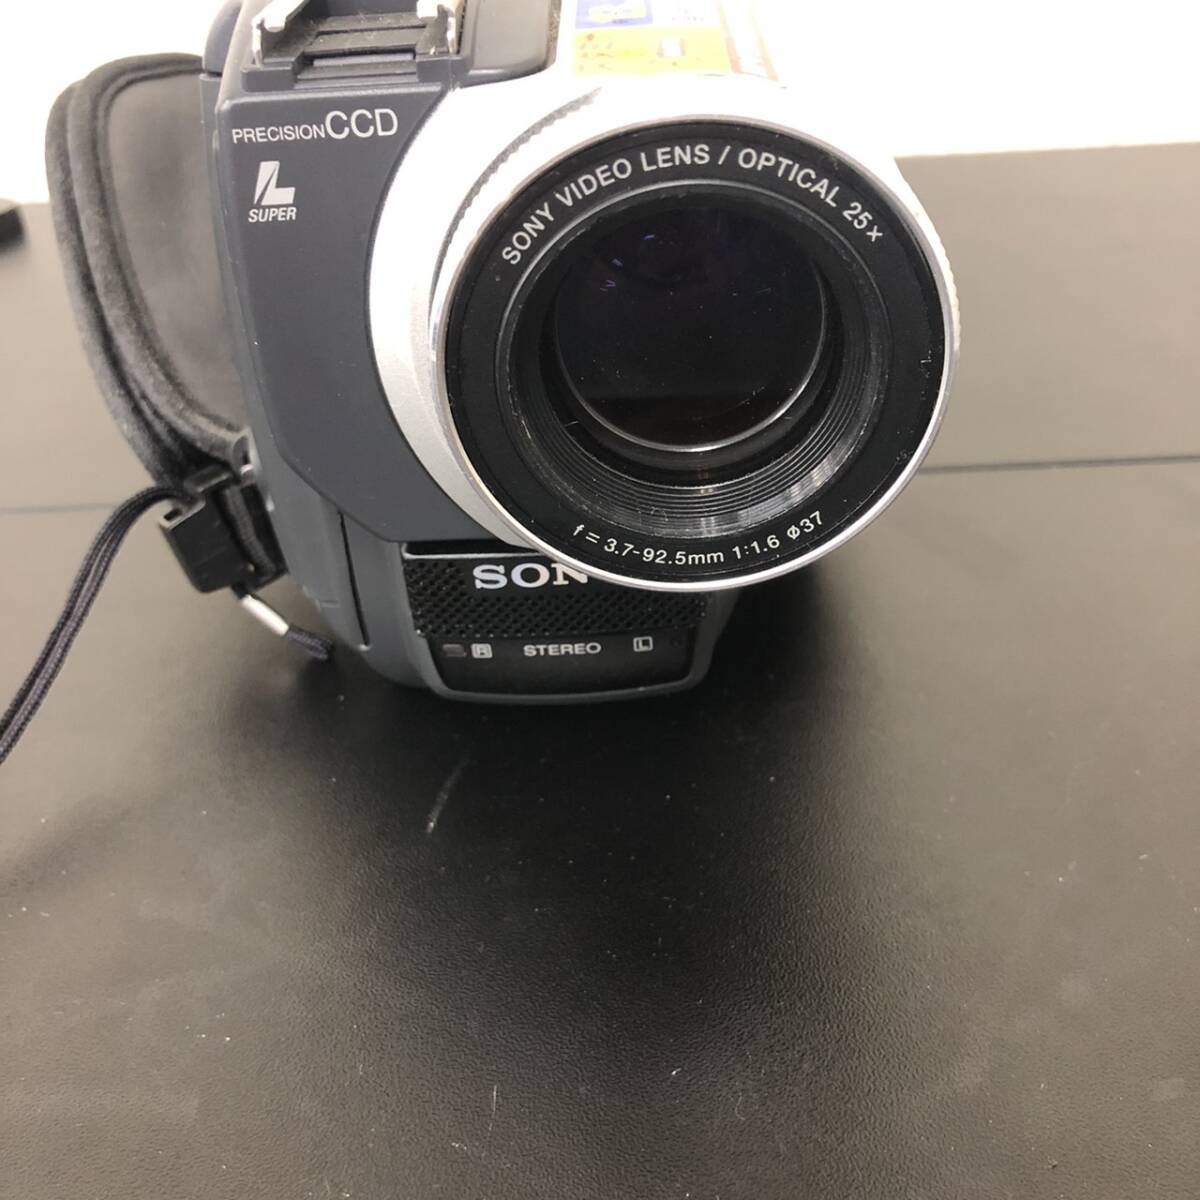 1000 иен старт [ работоспособность не проверялась ]SONY Sony DCR-TRV620 цифровая видео камера Handycam оборудование для работы с изображениями б/у 